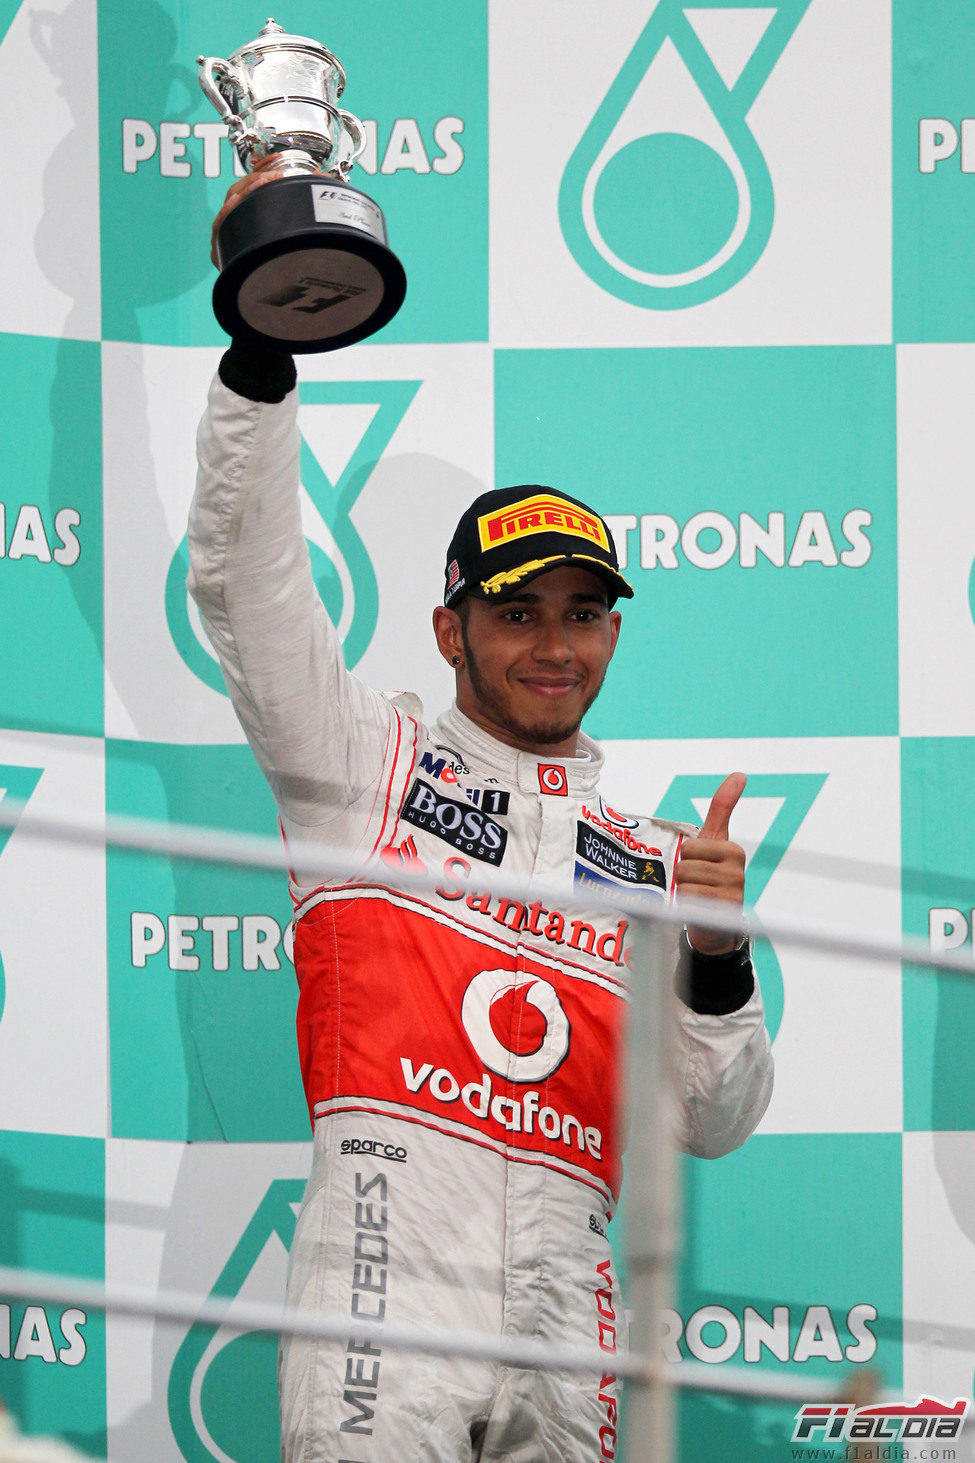 Lewis Hamilton levanta su trofeo en el GP de Malasia 2012